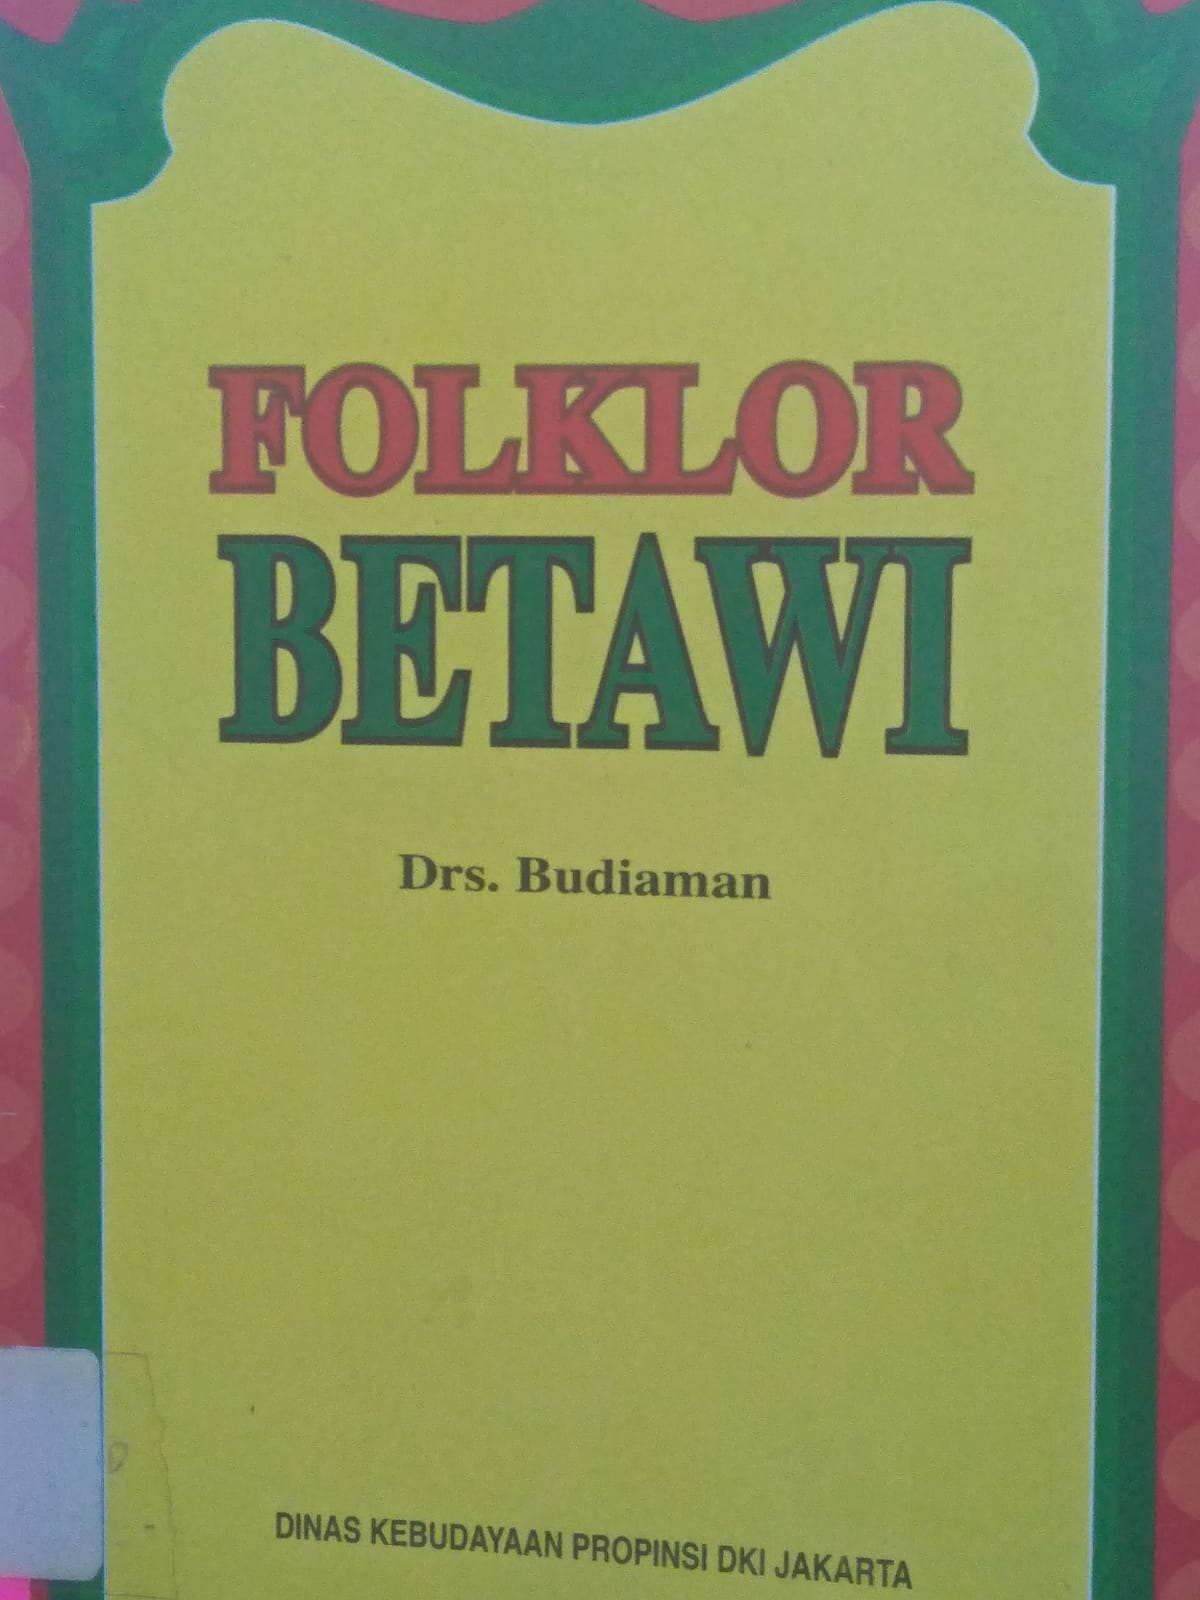 Folklor Betawi